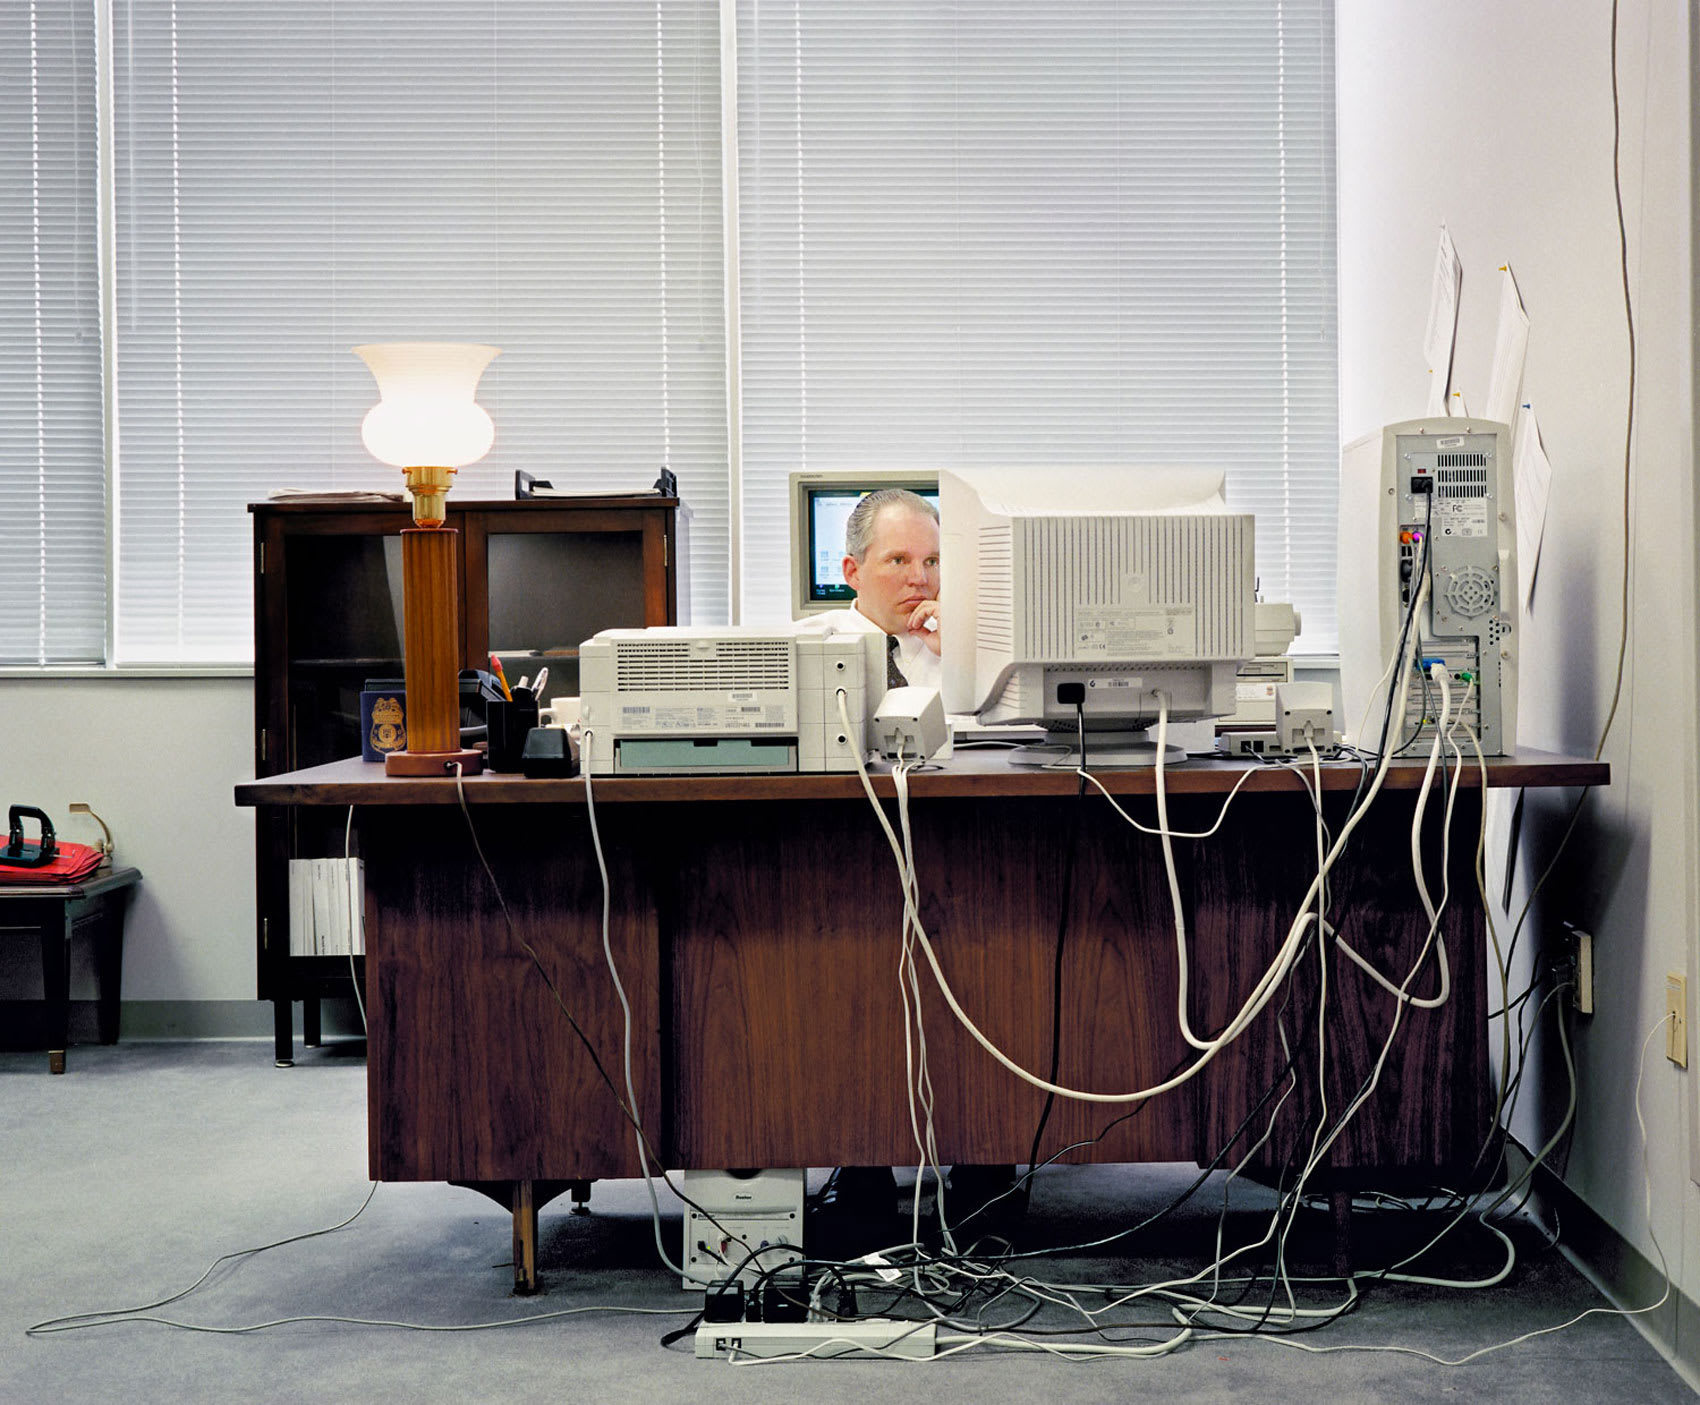 صور في كتاب ترسم بورتريه لما كانت عليه مكاتب الأعمال في التسعينيات